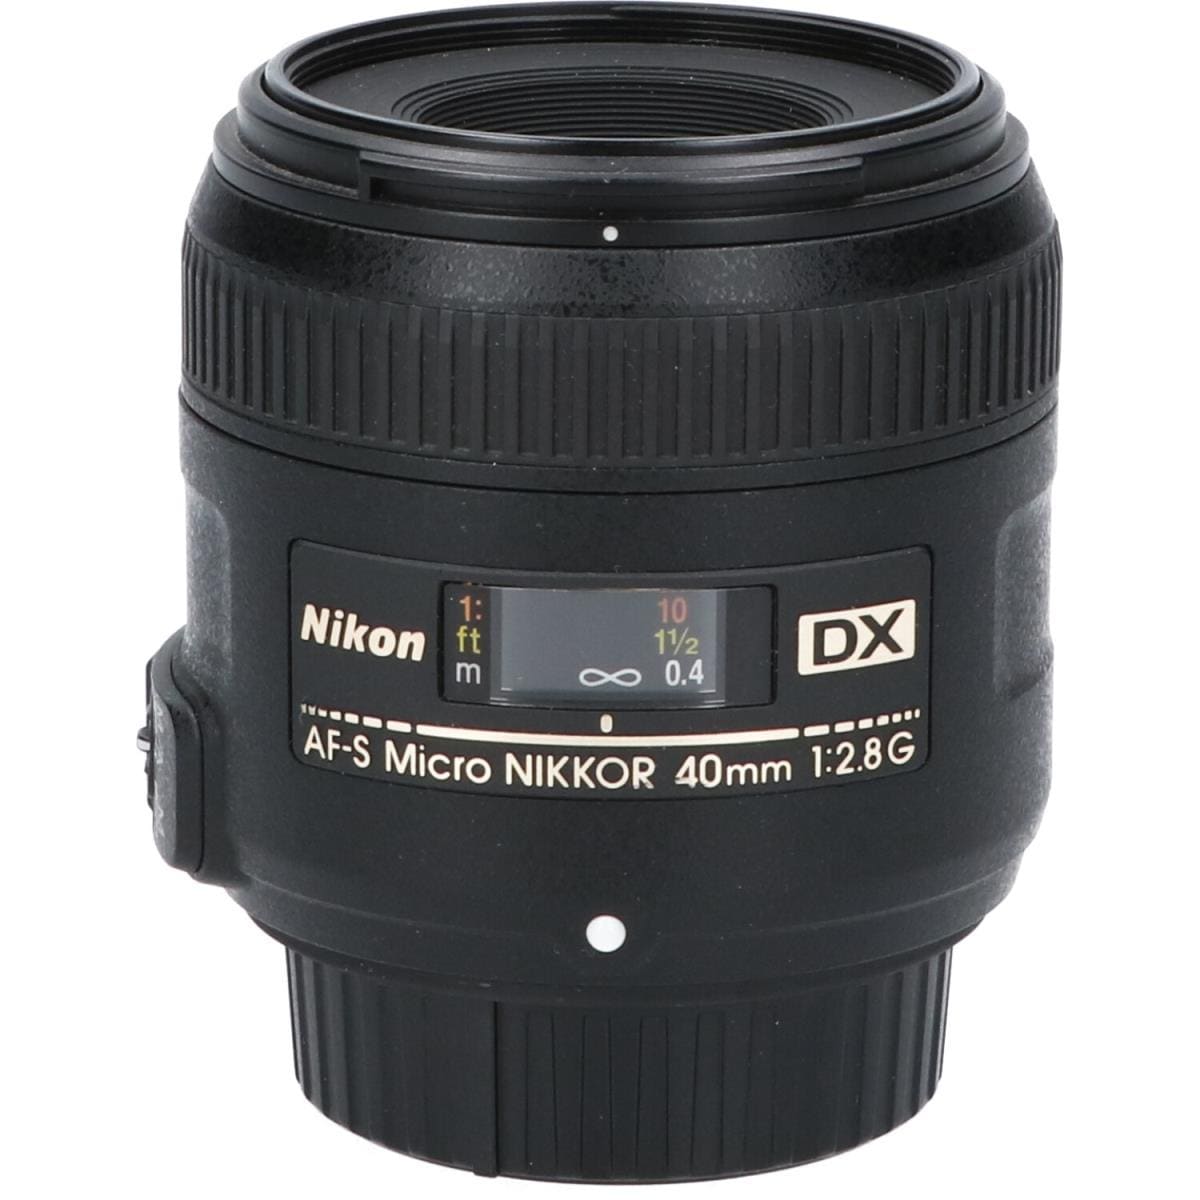 NIKON AF-S DX40mm F2.8G MICRO